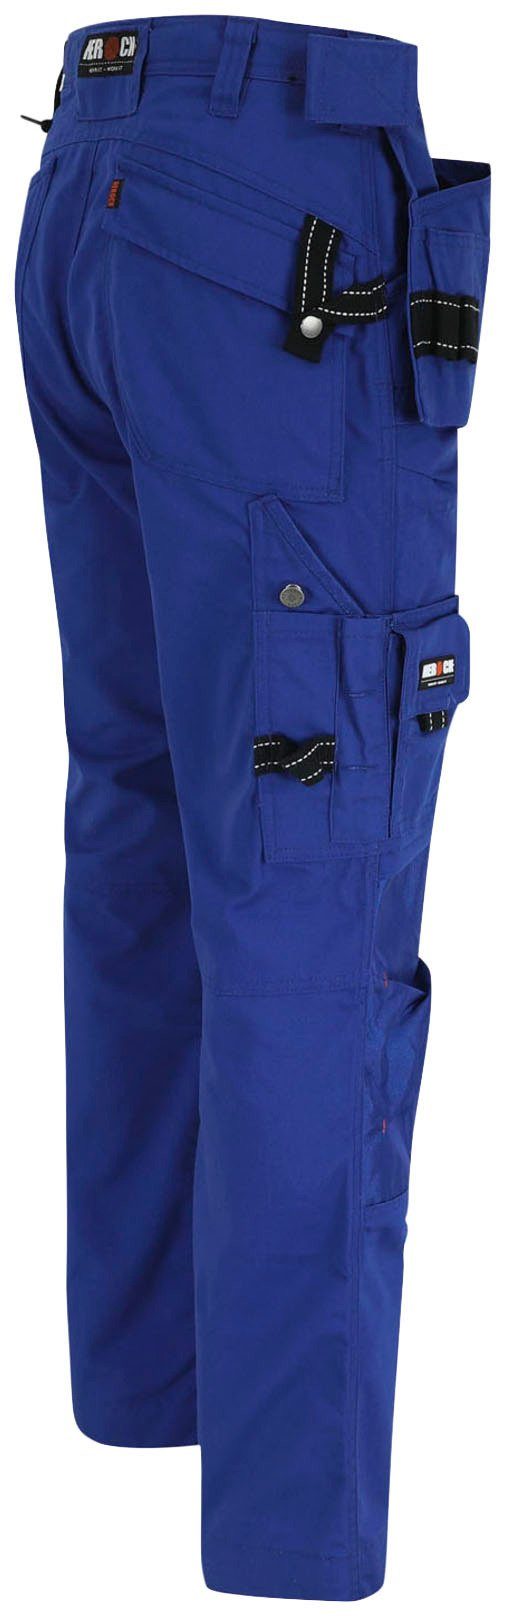 Herock Arbeitshose Dagan Hose blau (inkl. Taschen Nageltaschen) Wasserabweisend, robust, 11